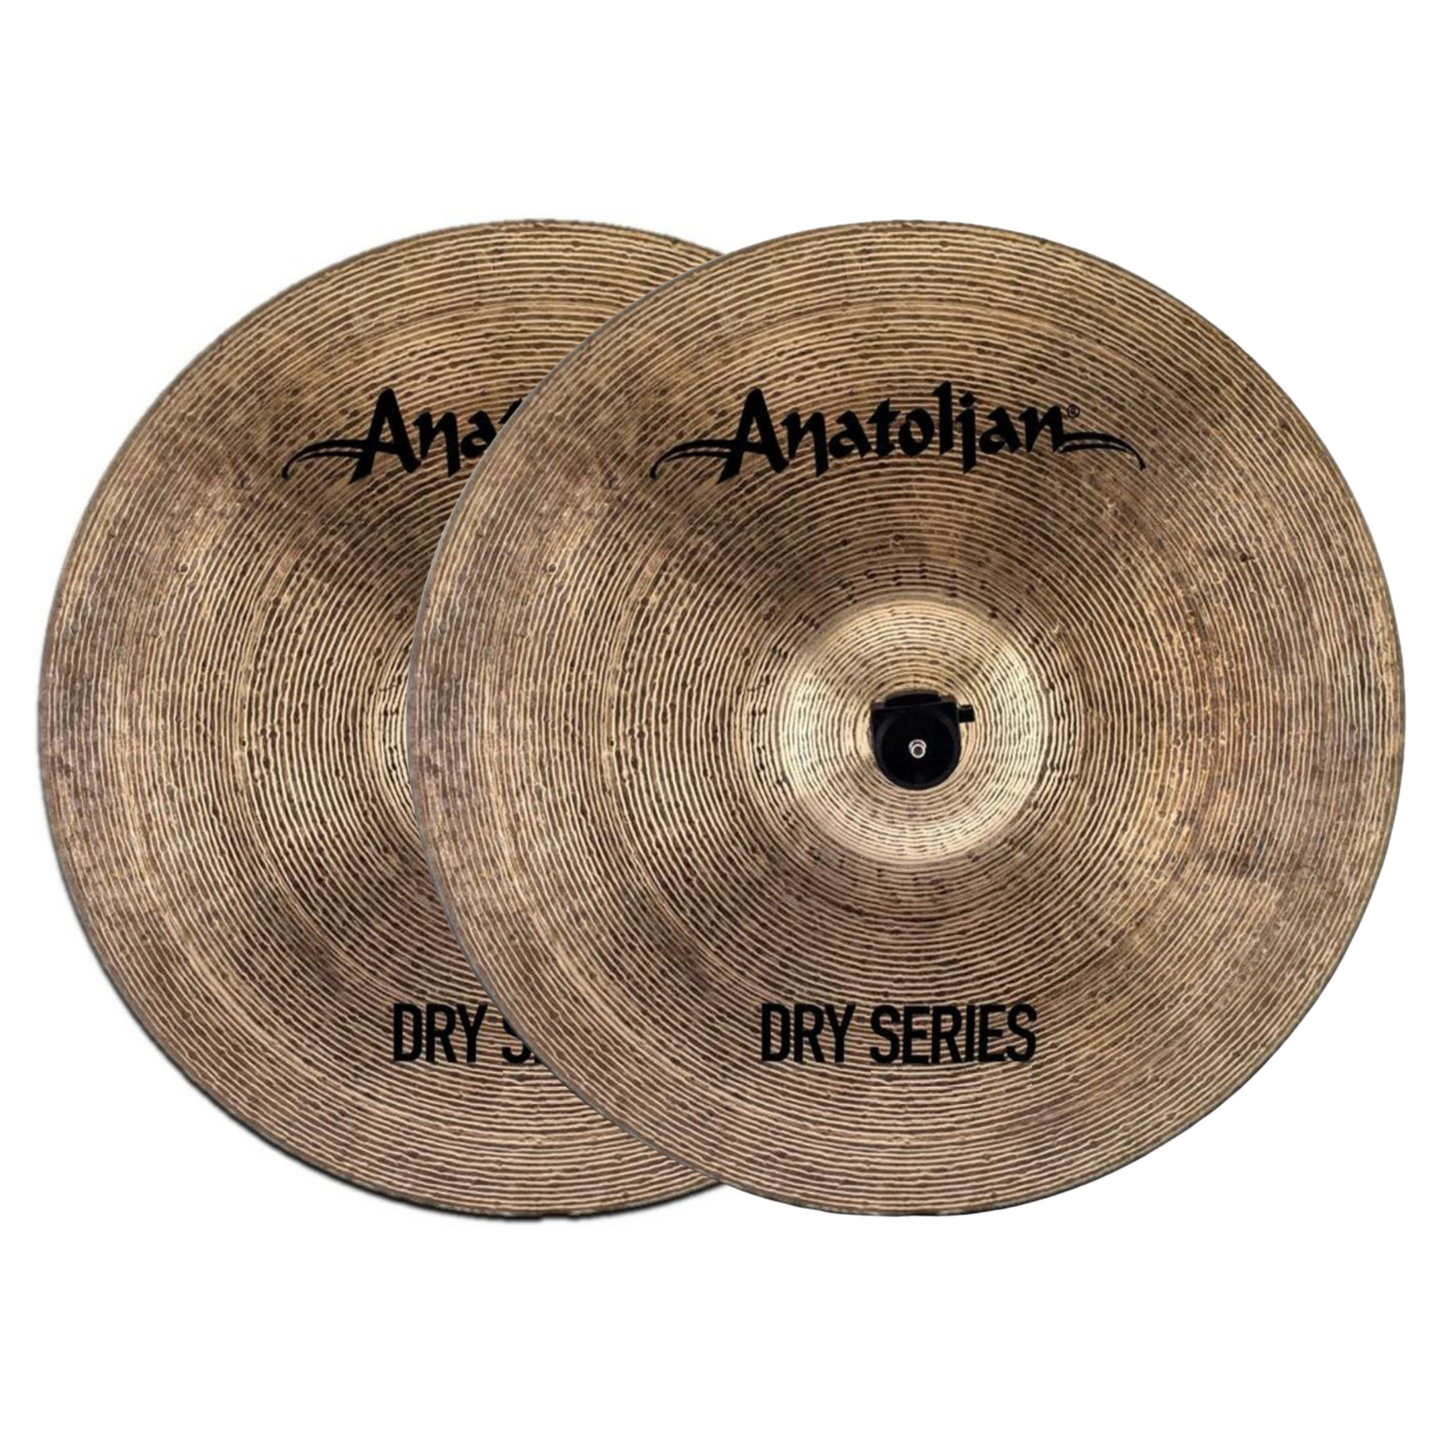 Anatolian Cymbals Dry Series